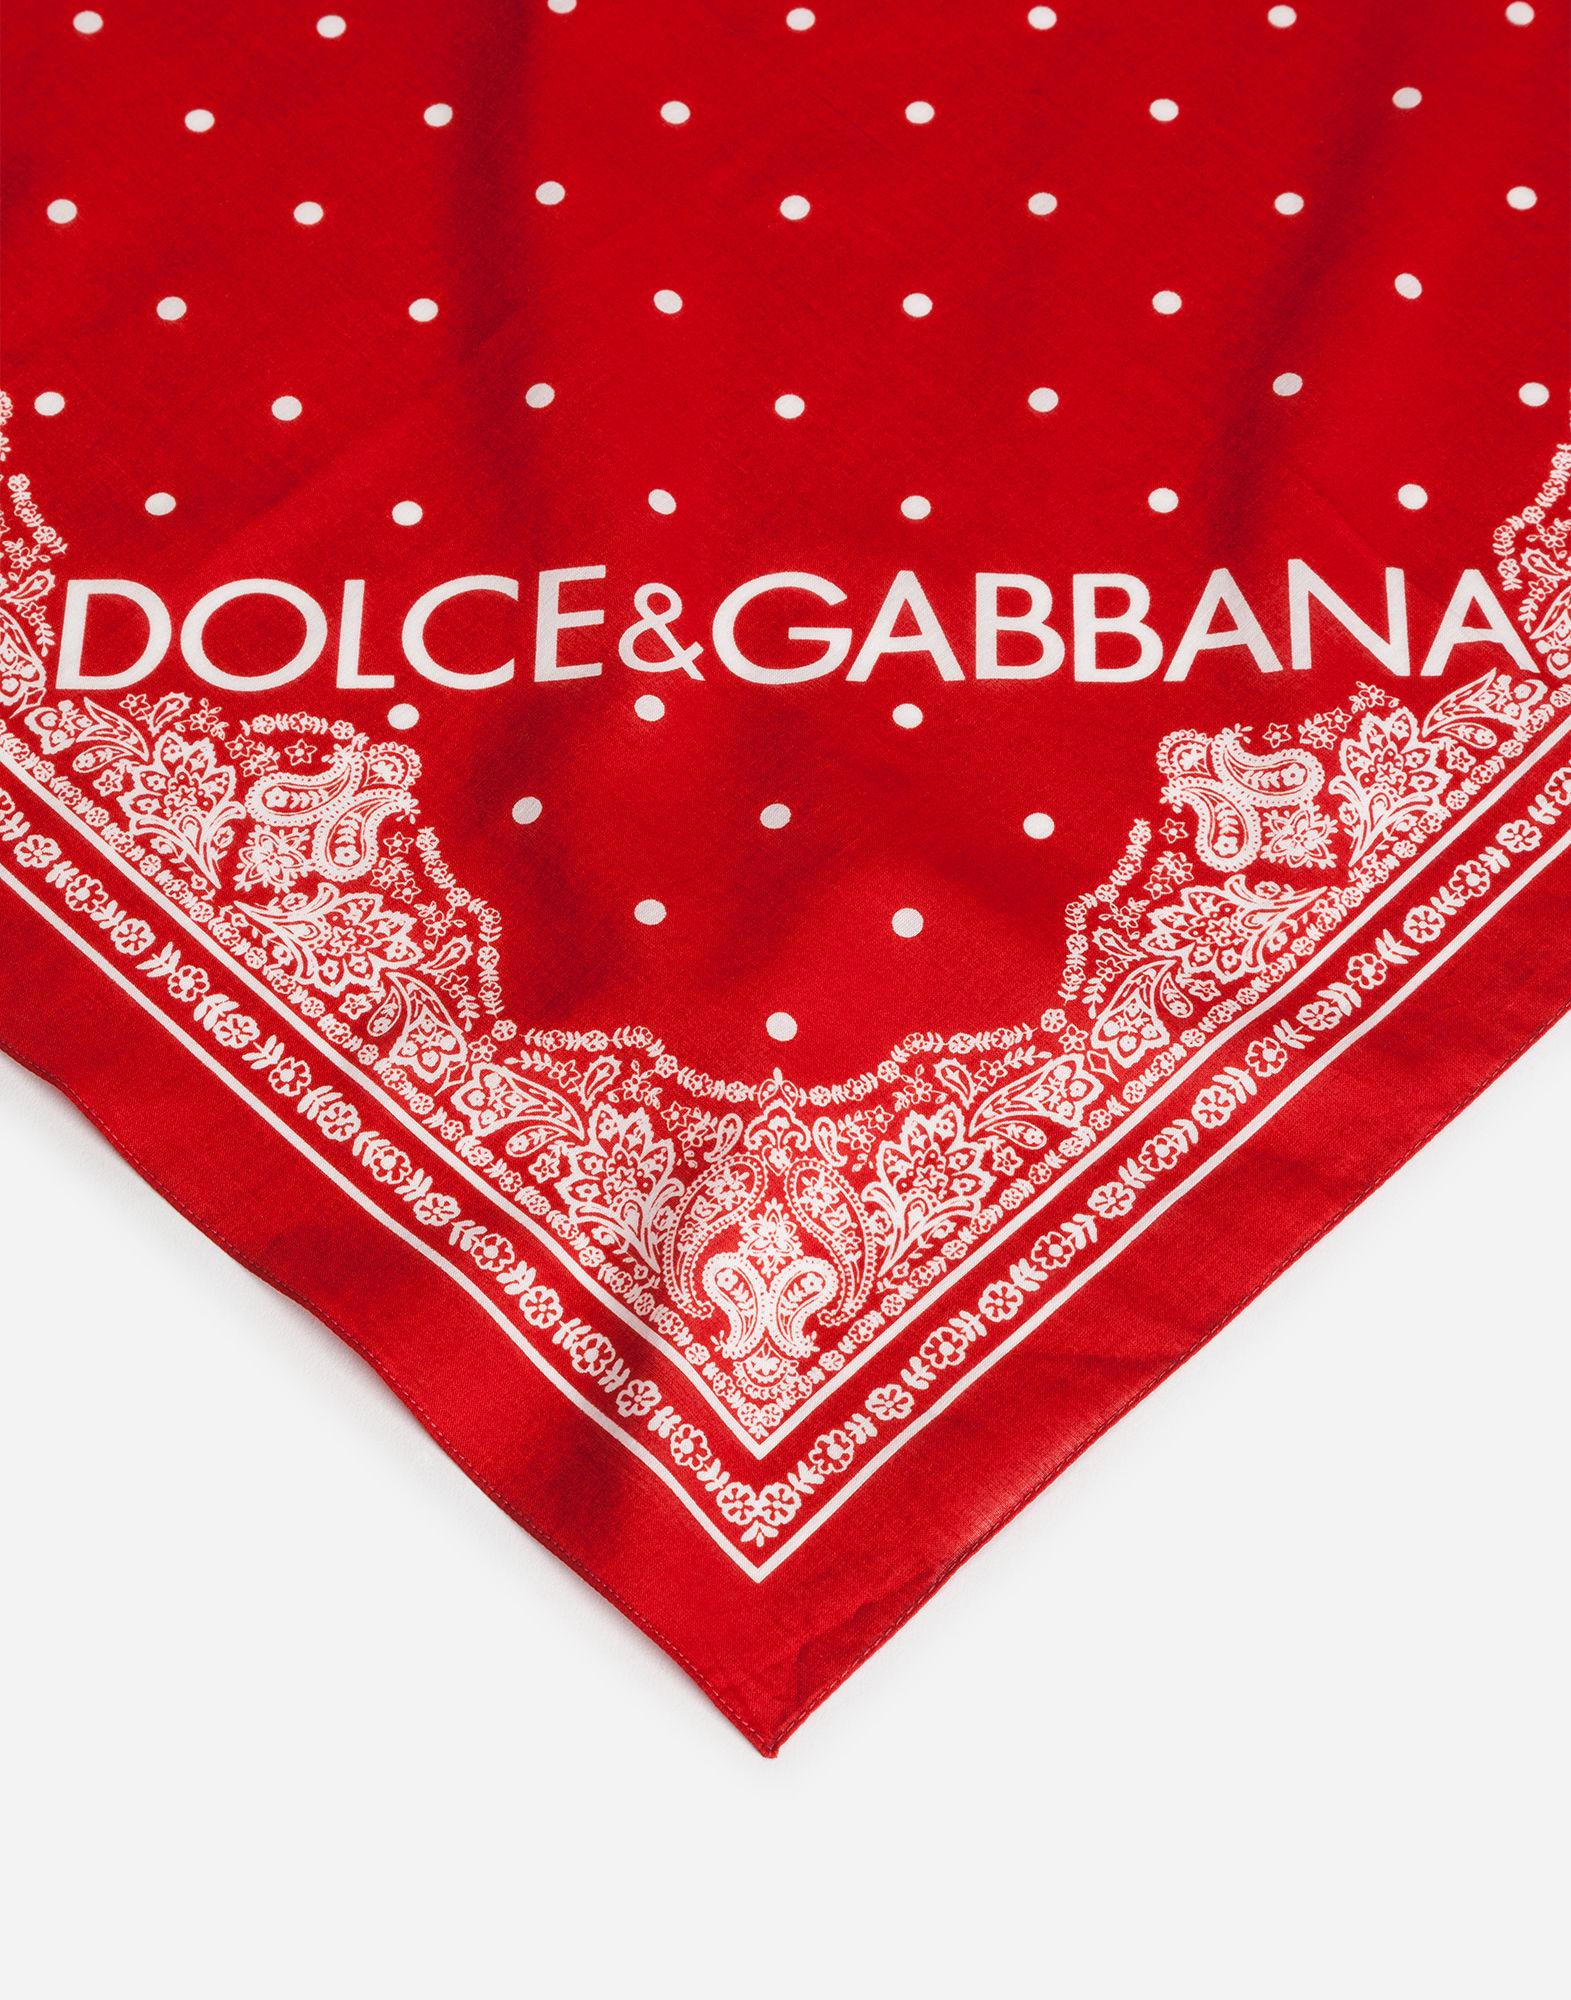 dolce and gabbana bandana